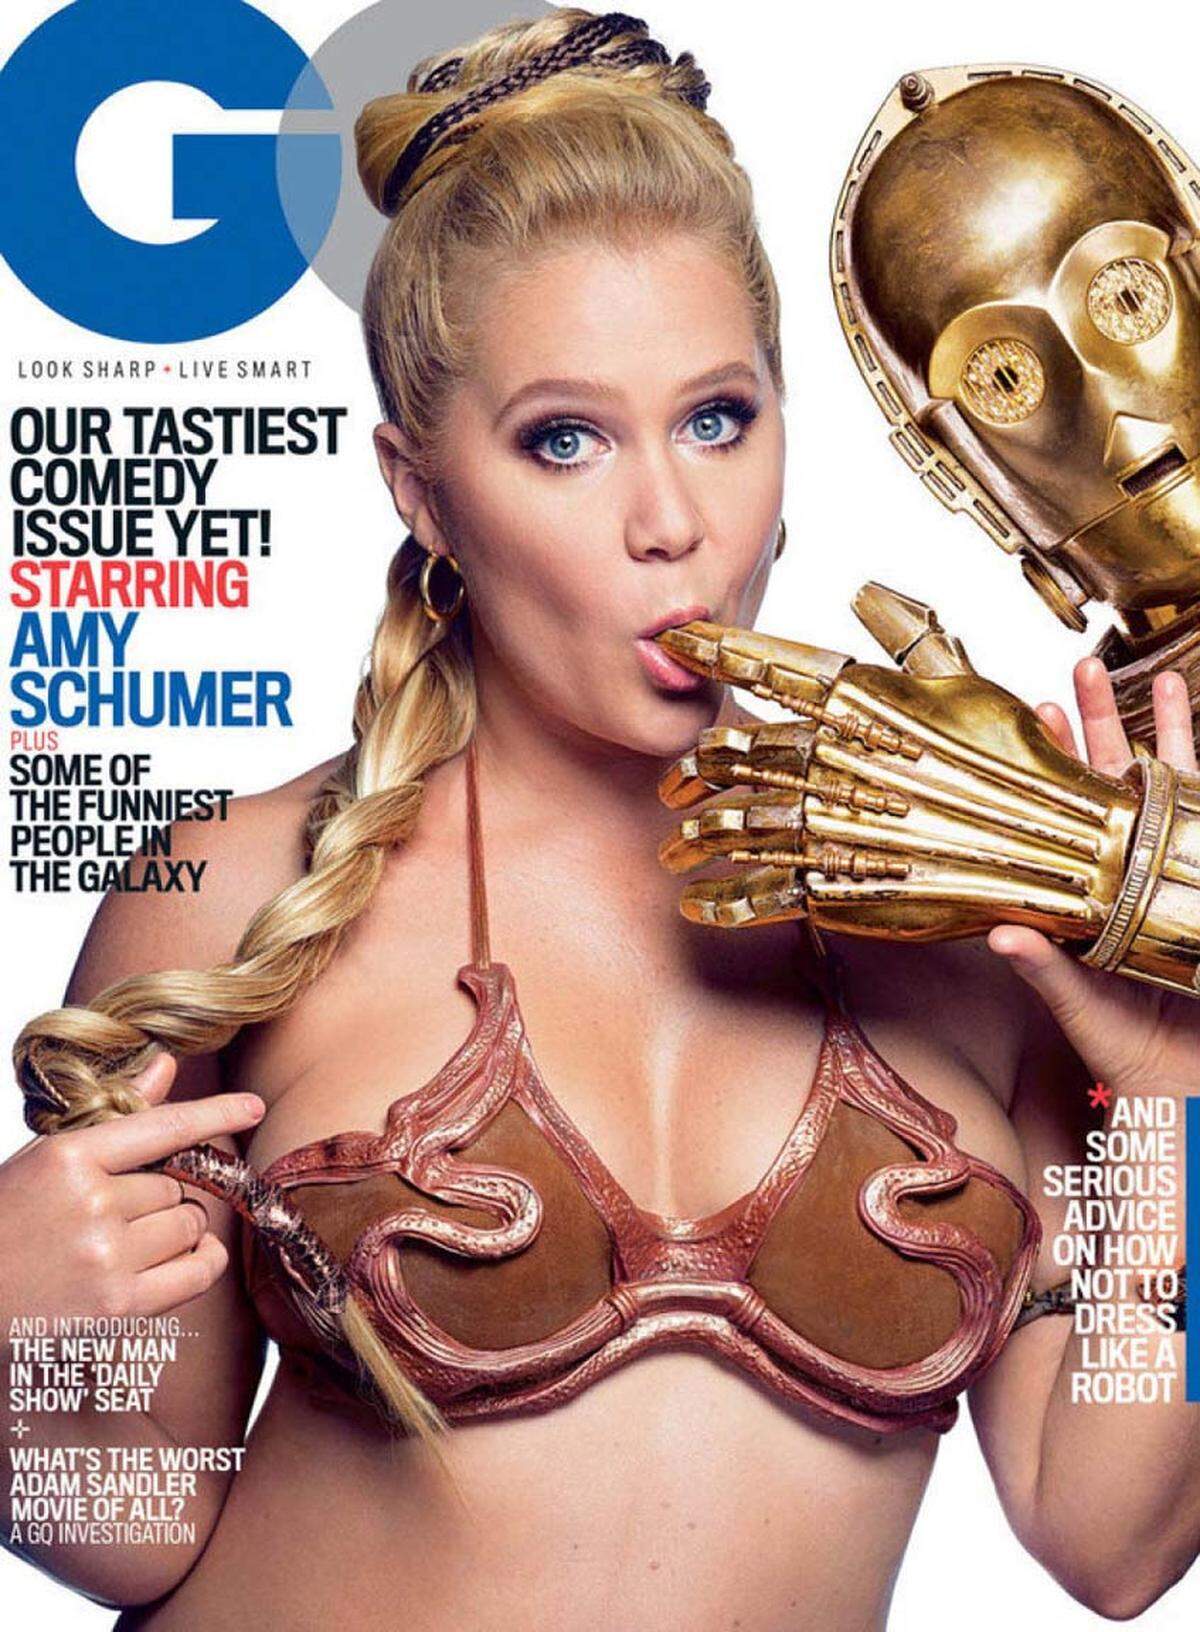 In der Kategorie "Best Celebrity &amp; Entertainment Cover" siegte Amy Schumer für GQ mit 32 Prozent der Stimmen. Fotograf Mark Seliger inszenierte die Schauspielerin in sexy Star Wars Manier für die August-Ausgabe.